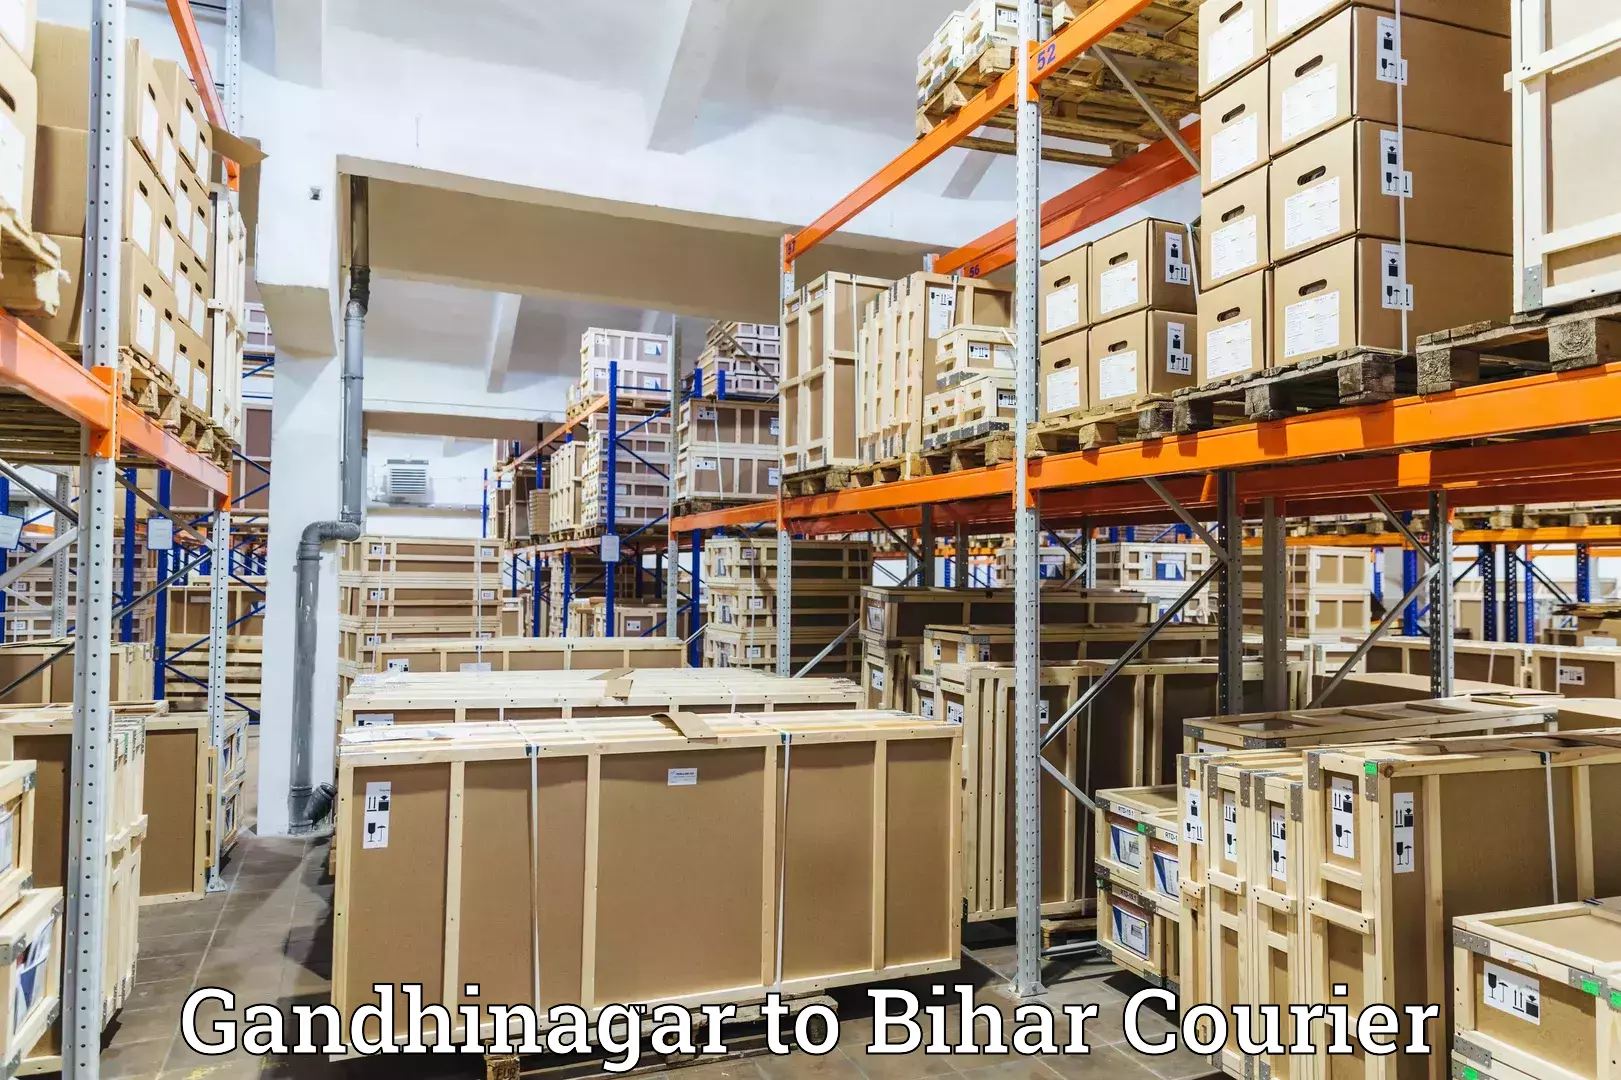 Comprehensive freight services in Gandhinagar to Biraul